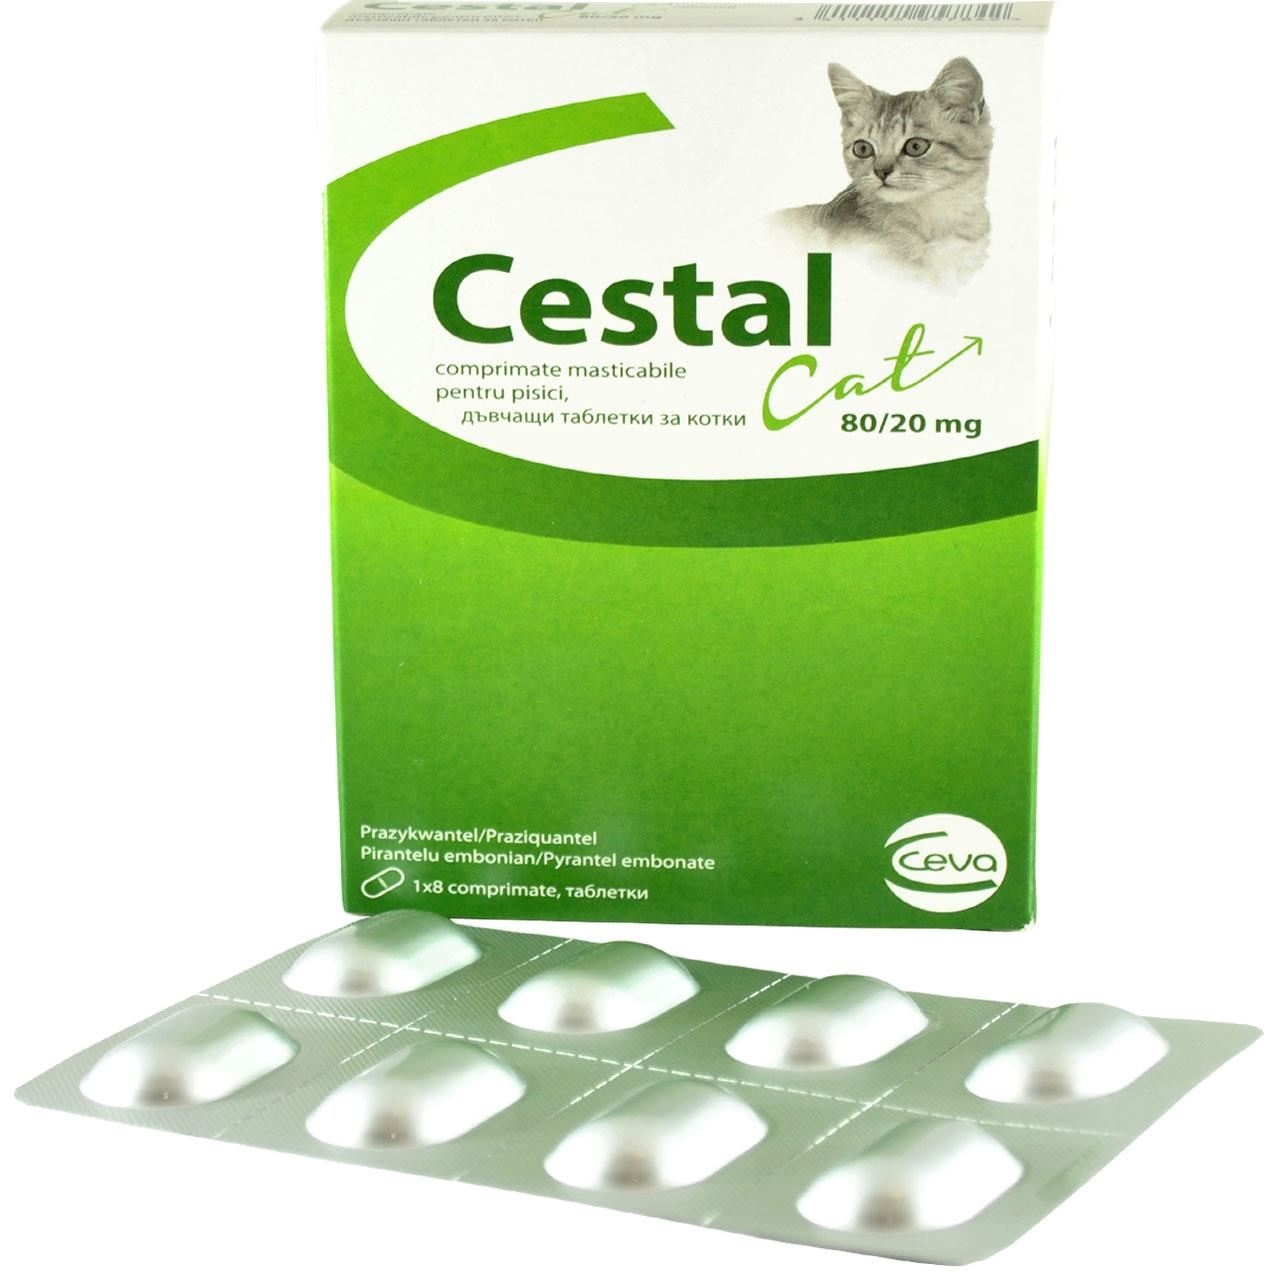 Cestal Cat Chew, 8 tablete masticabile antiparazitar intern pentru pisici petmart